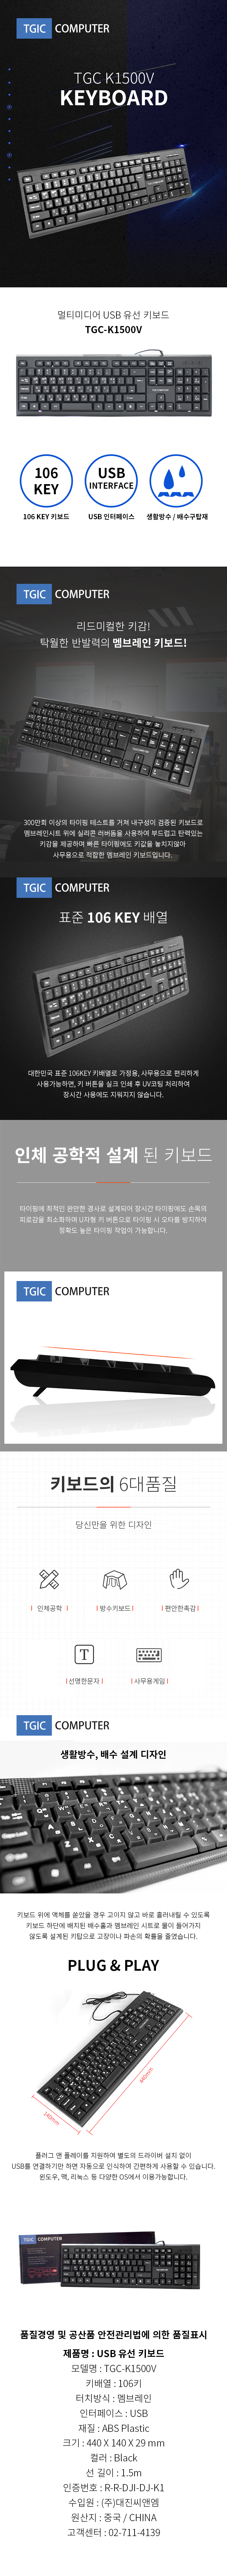 TGC-K1500V.jpg